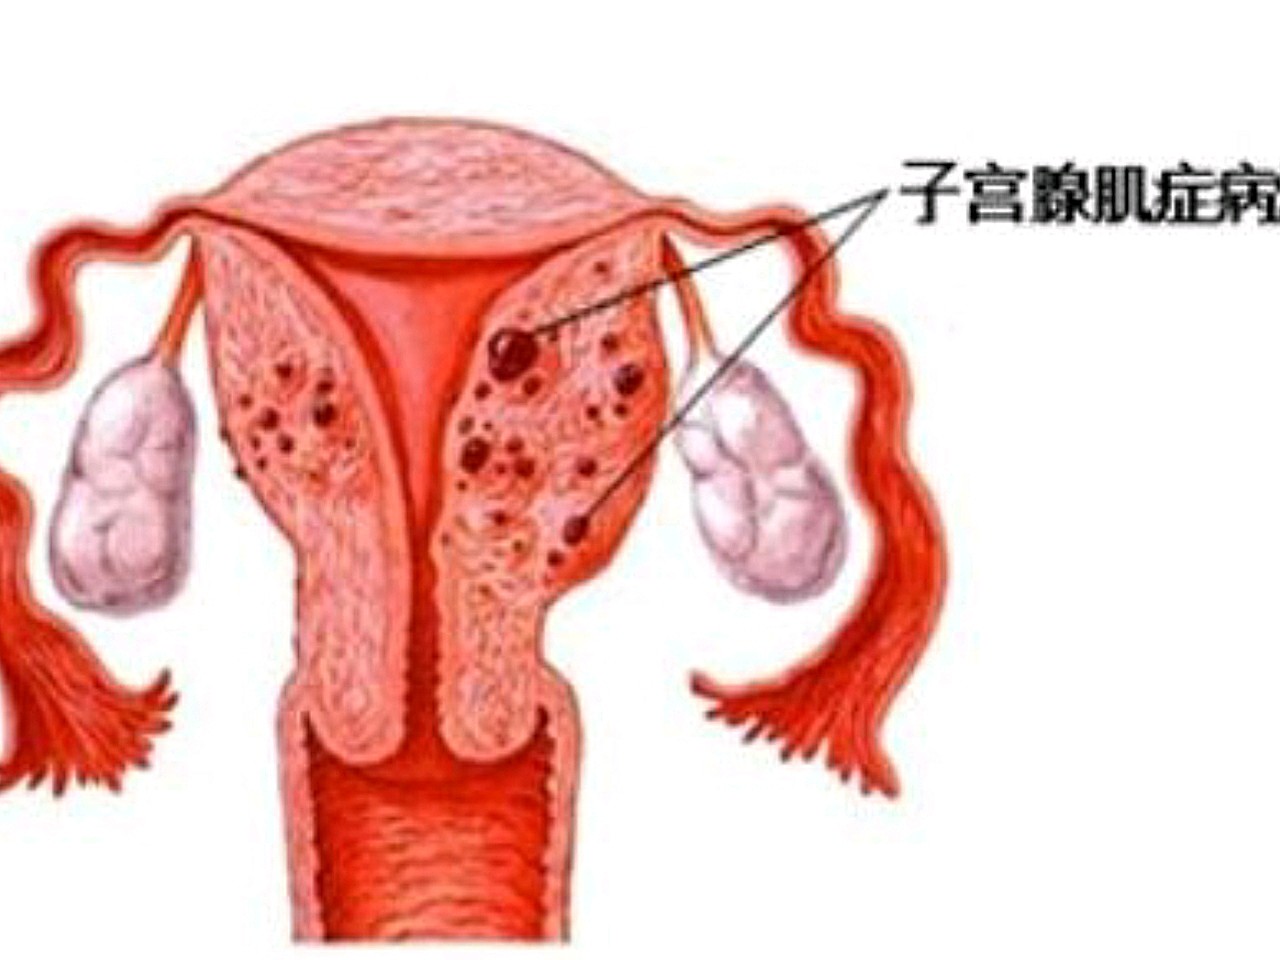 子宫腺肌症会出现子宫增大的情况,主要是因为子宫肌层_圈子-新氧美容